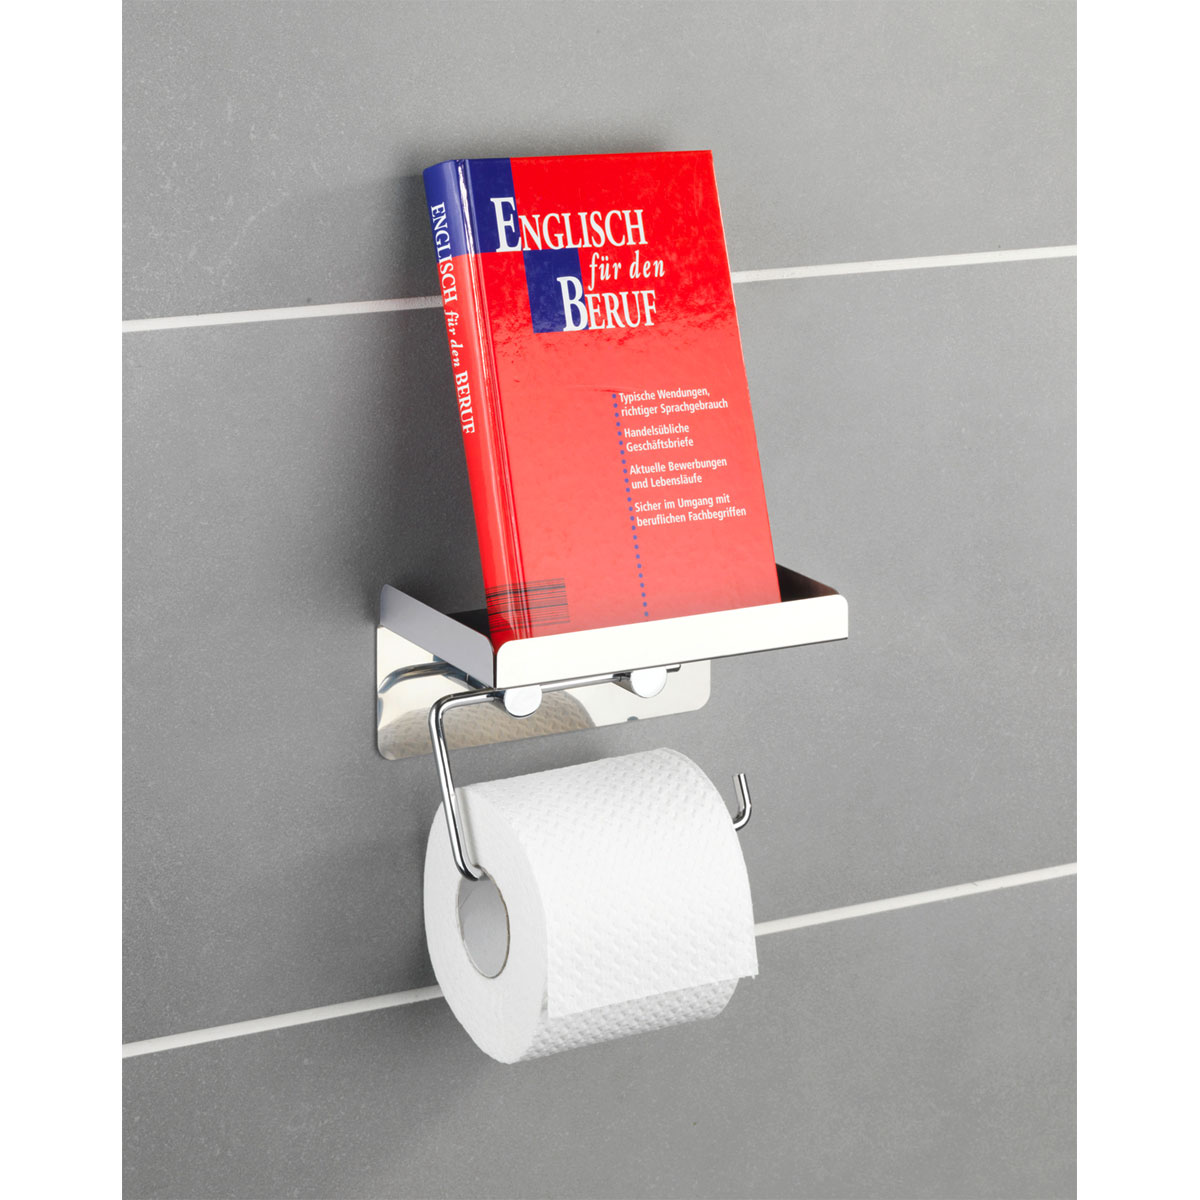 Wenko Toilettenpapierhalter 2 in 1 Edelstahl rostfrei | 514880